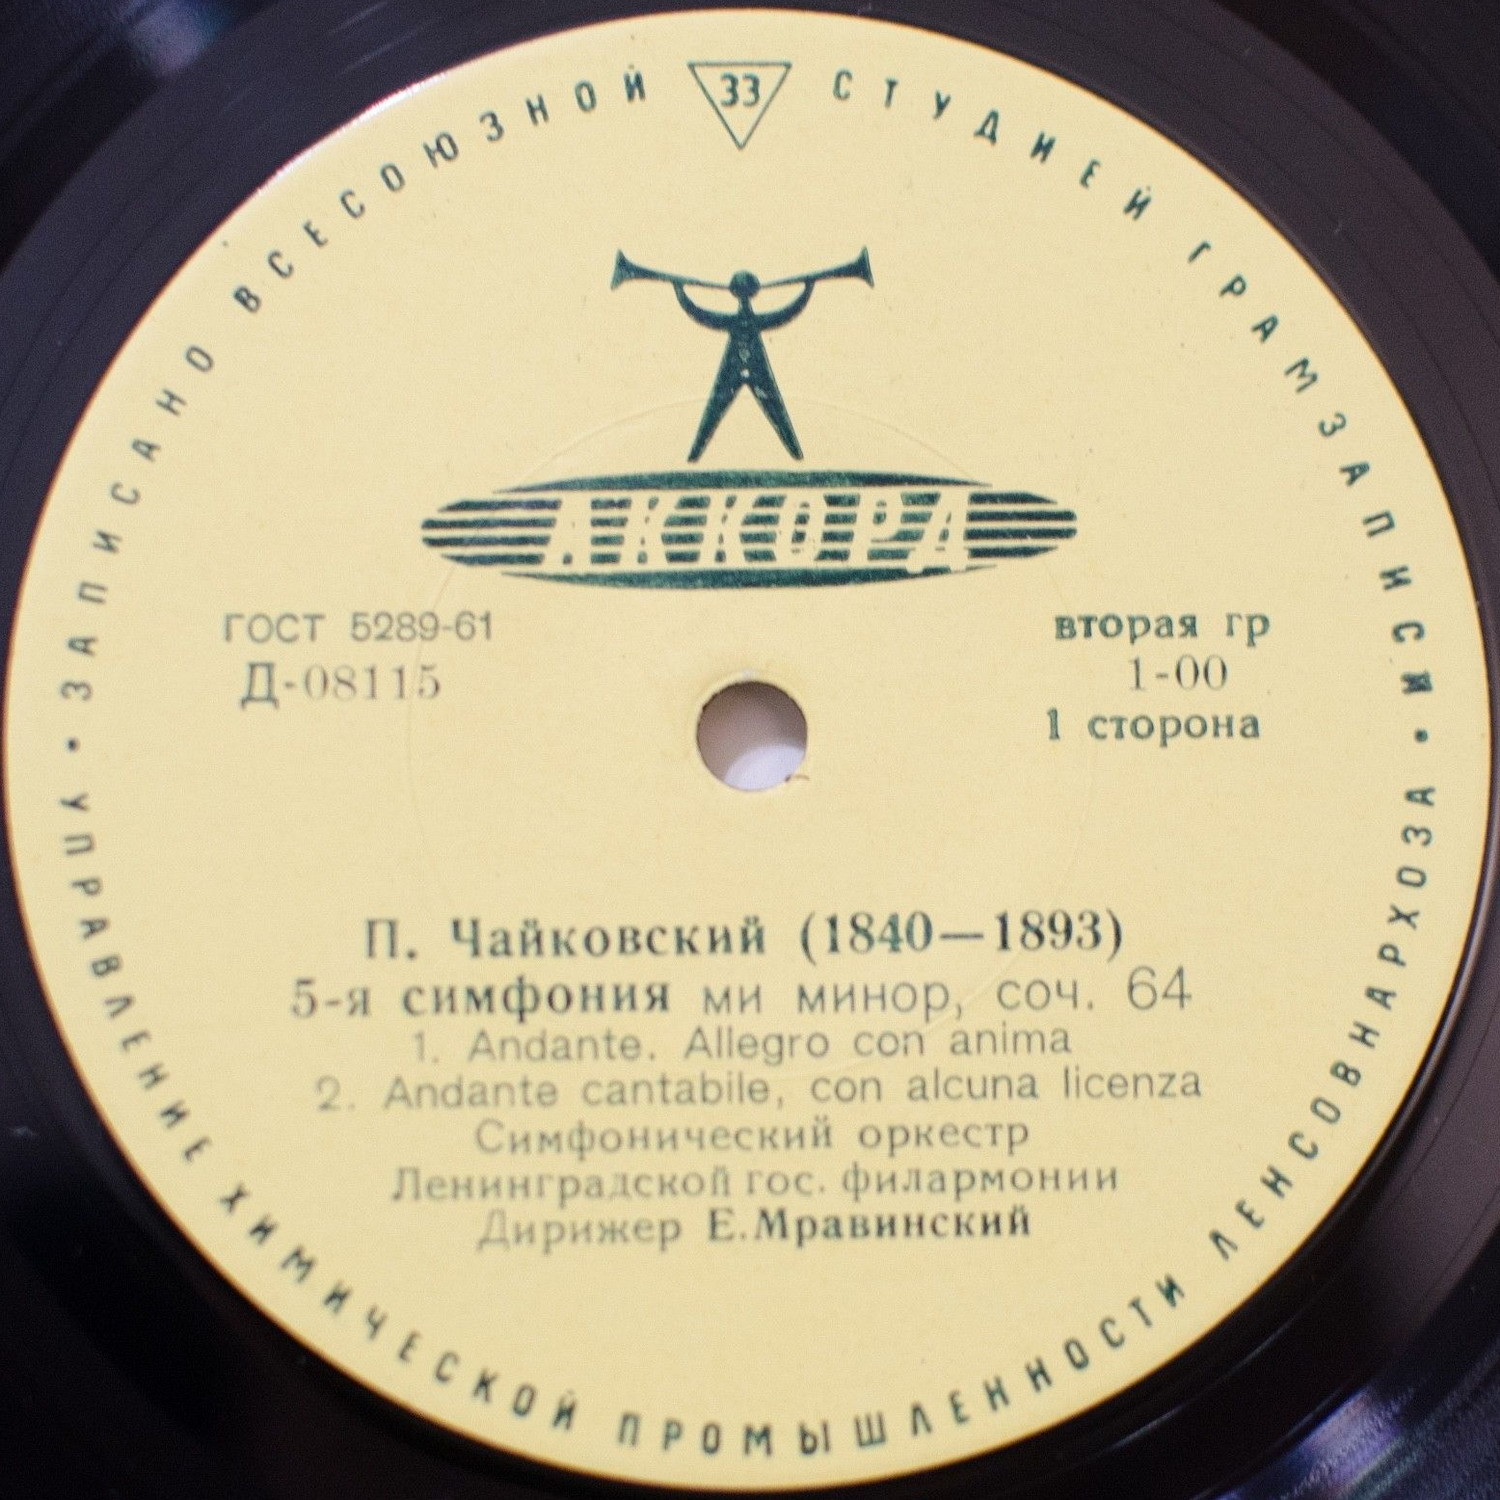 П. ЧАЙКОВСКИЙ (1840–1893): Симфония № 5 ми минор, соч. 64 (Е. Мравинский)